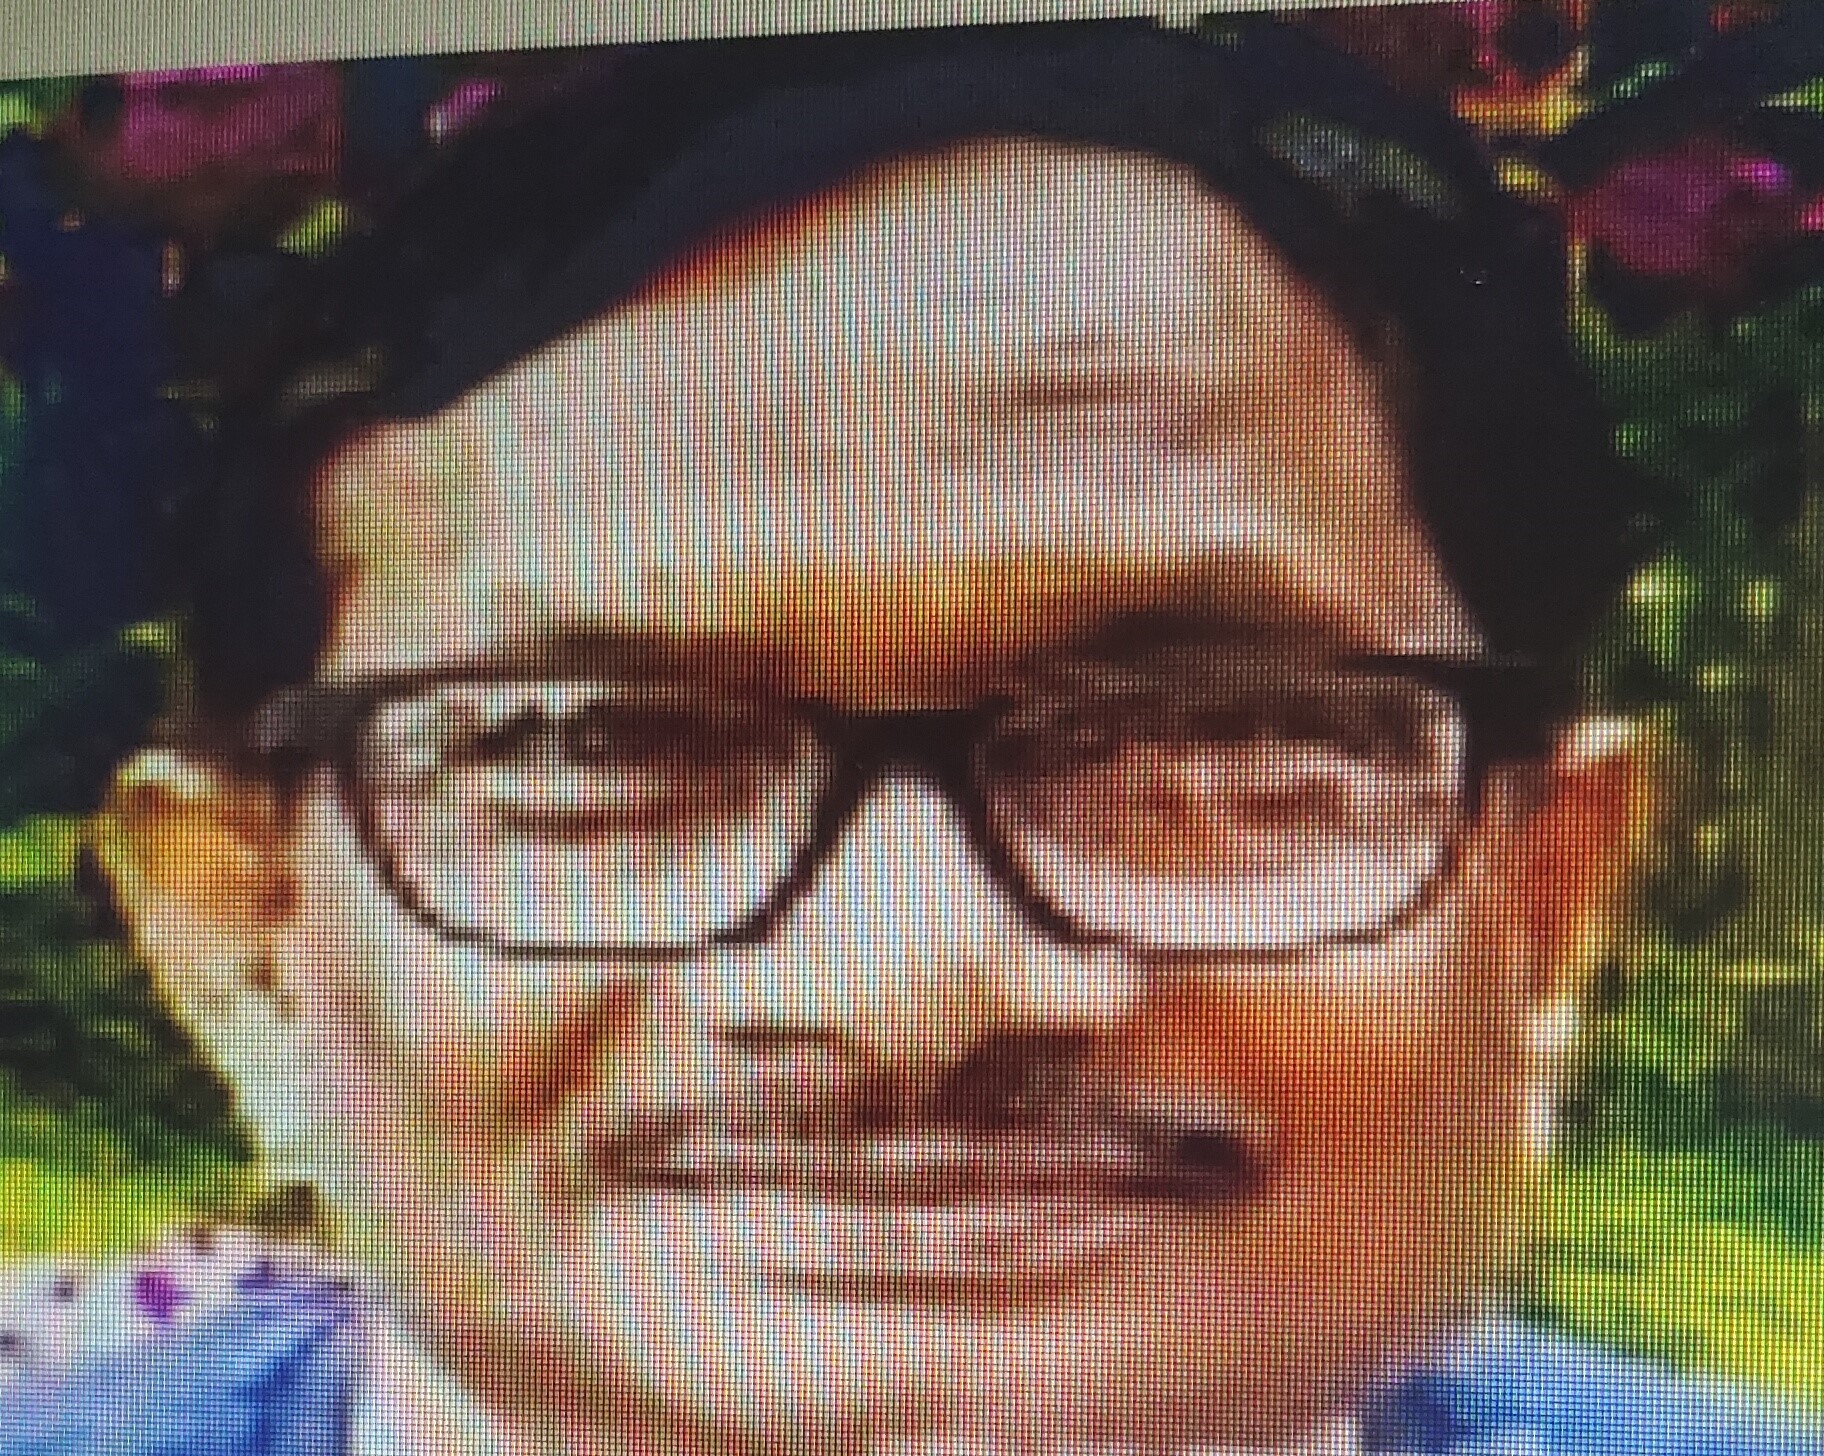 Dr. Vinod Bhardwaj